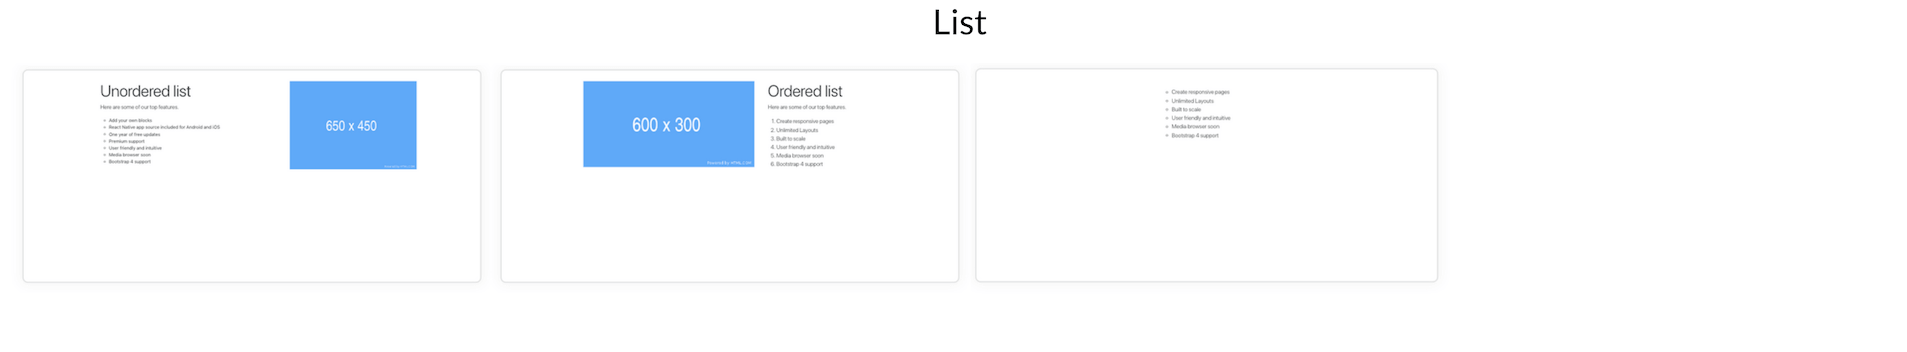 Elements Of Blueprints App, A Bootstrap Web Builder - List